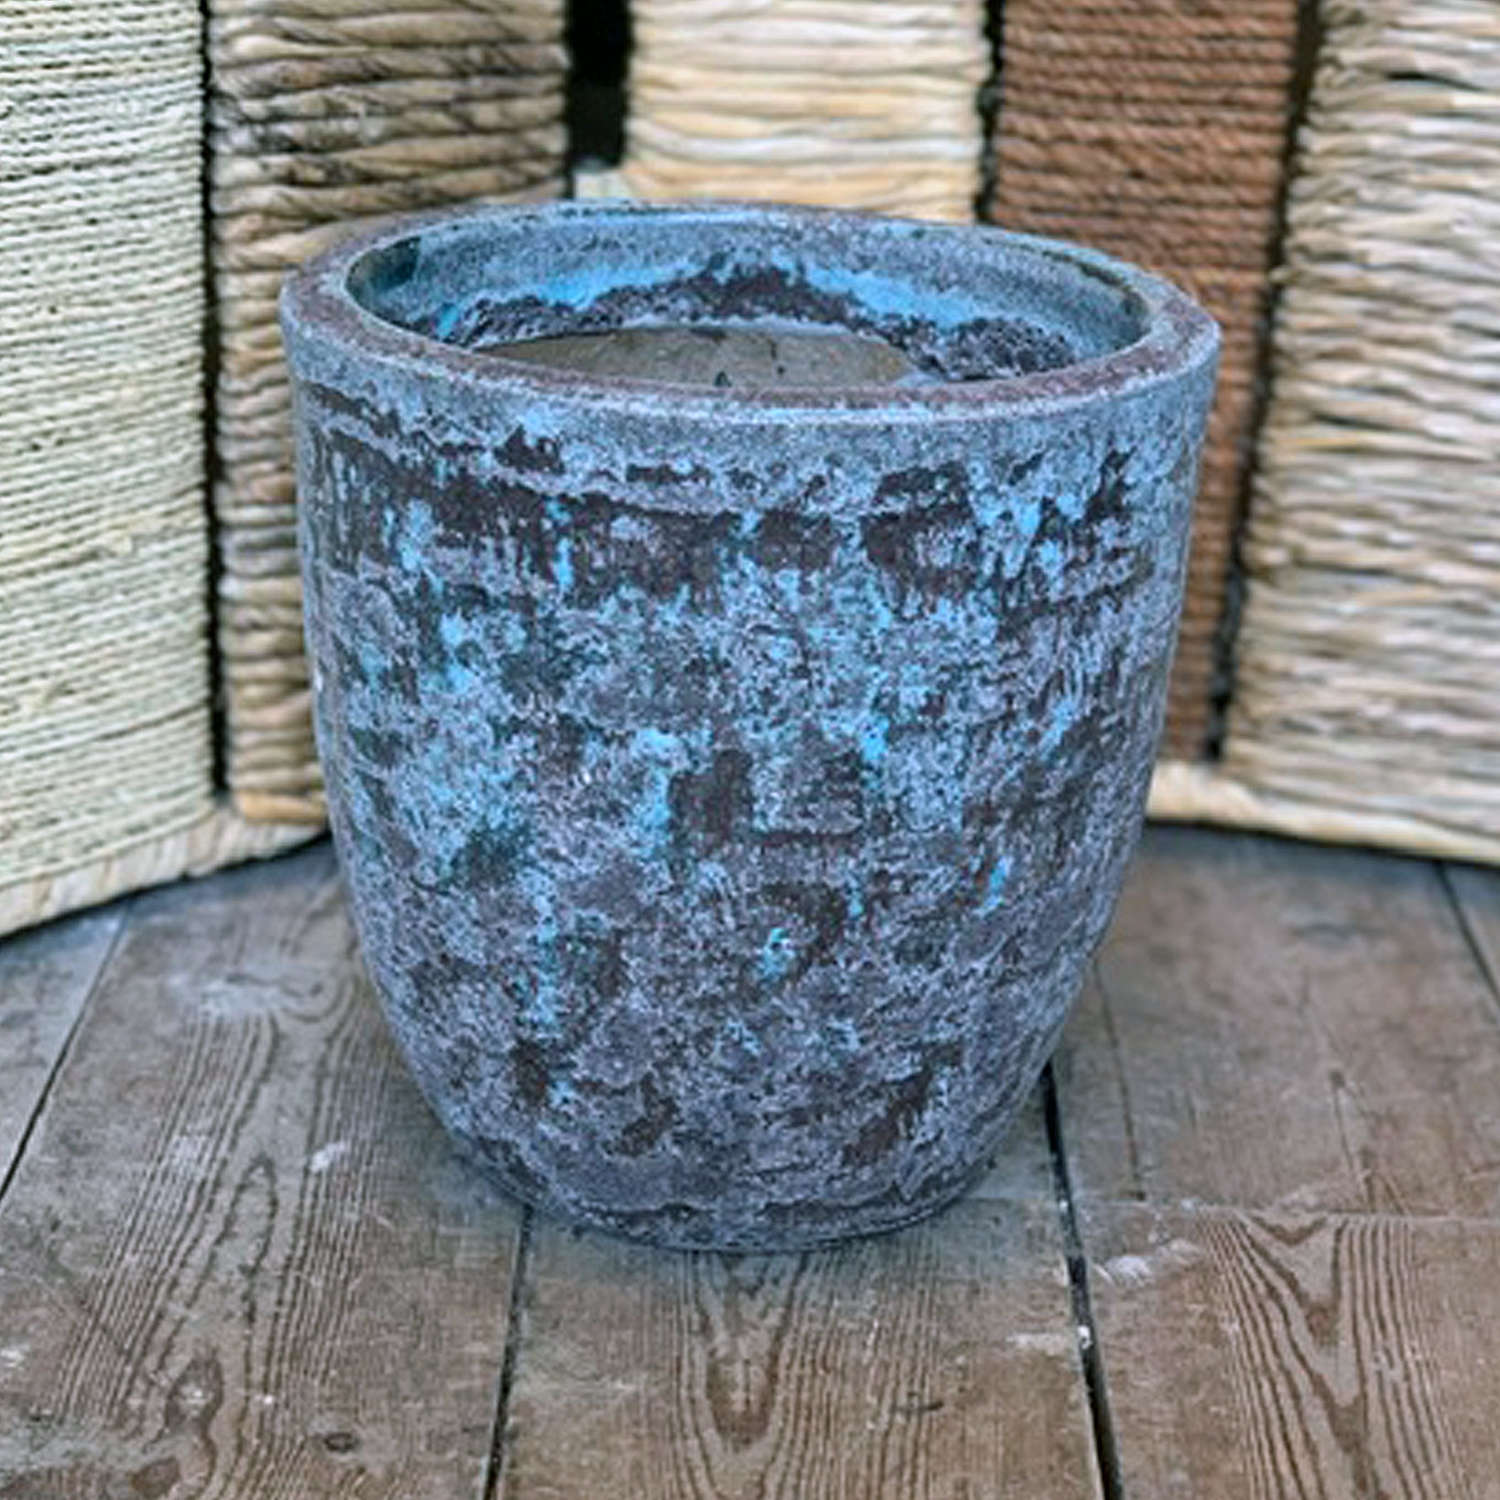 Textured Garden Pot